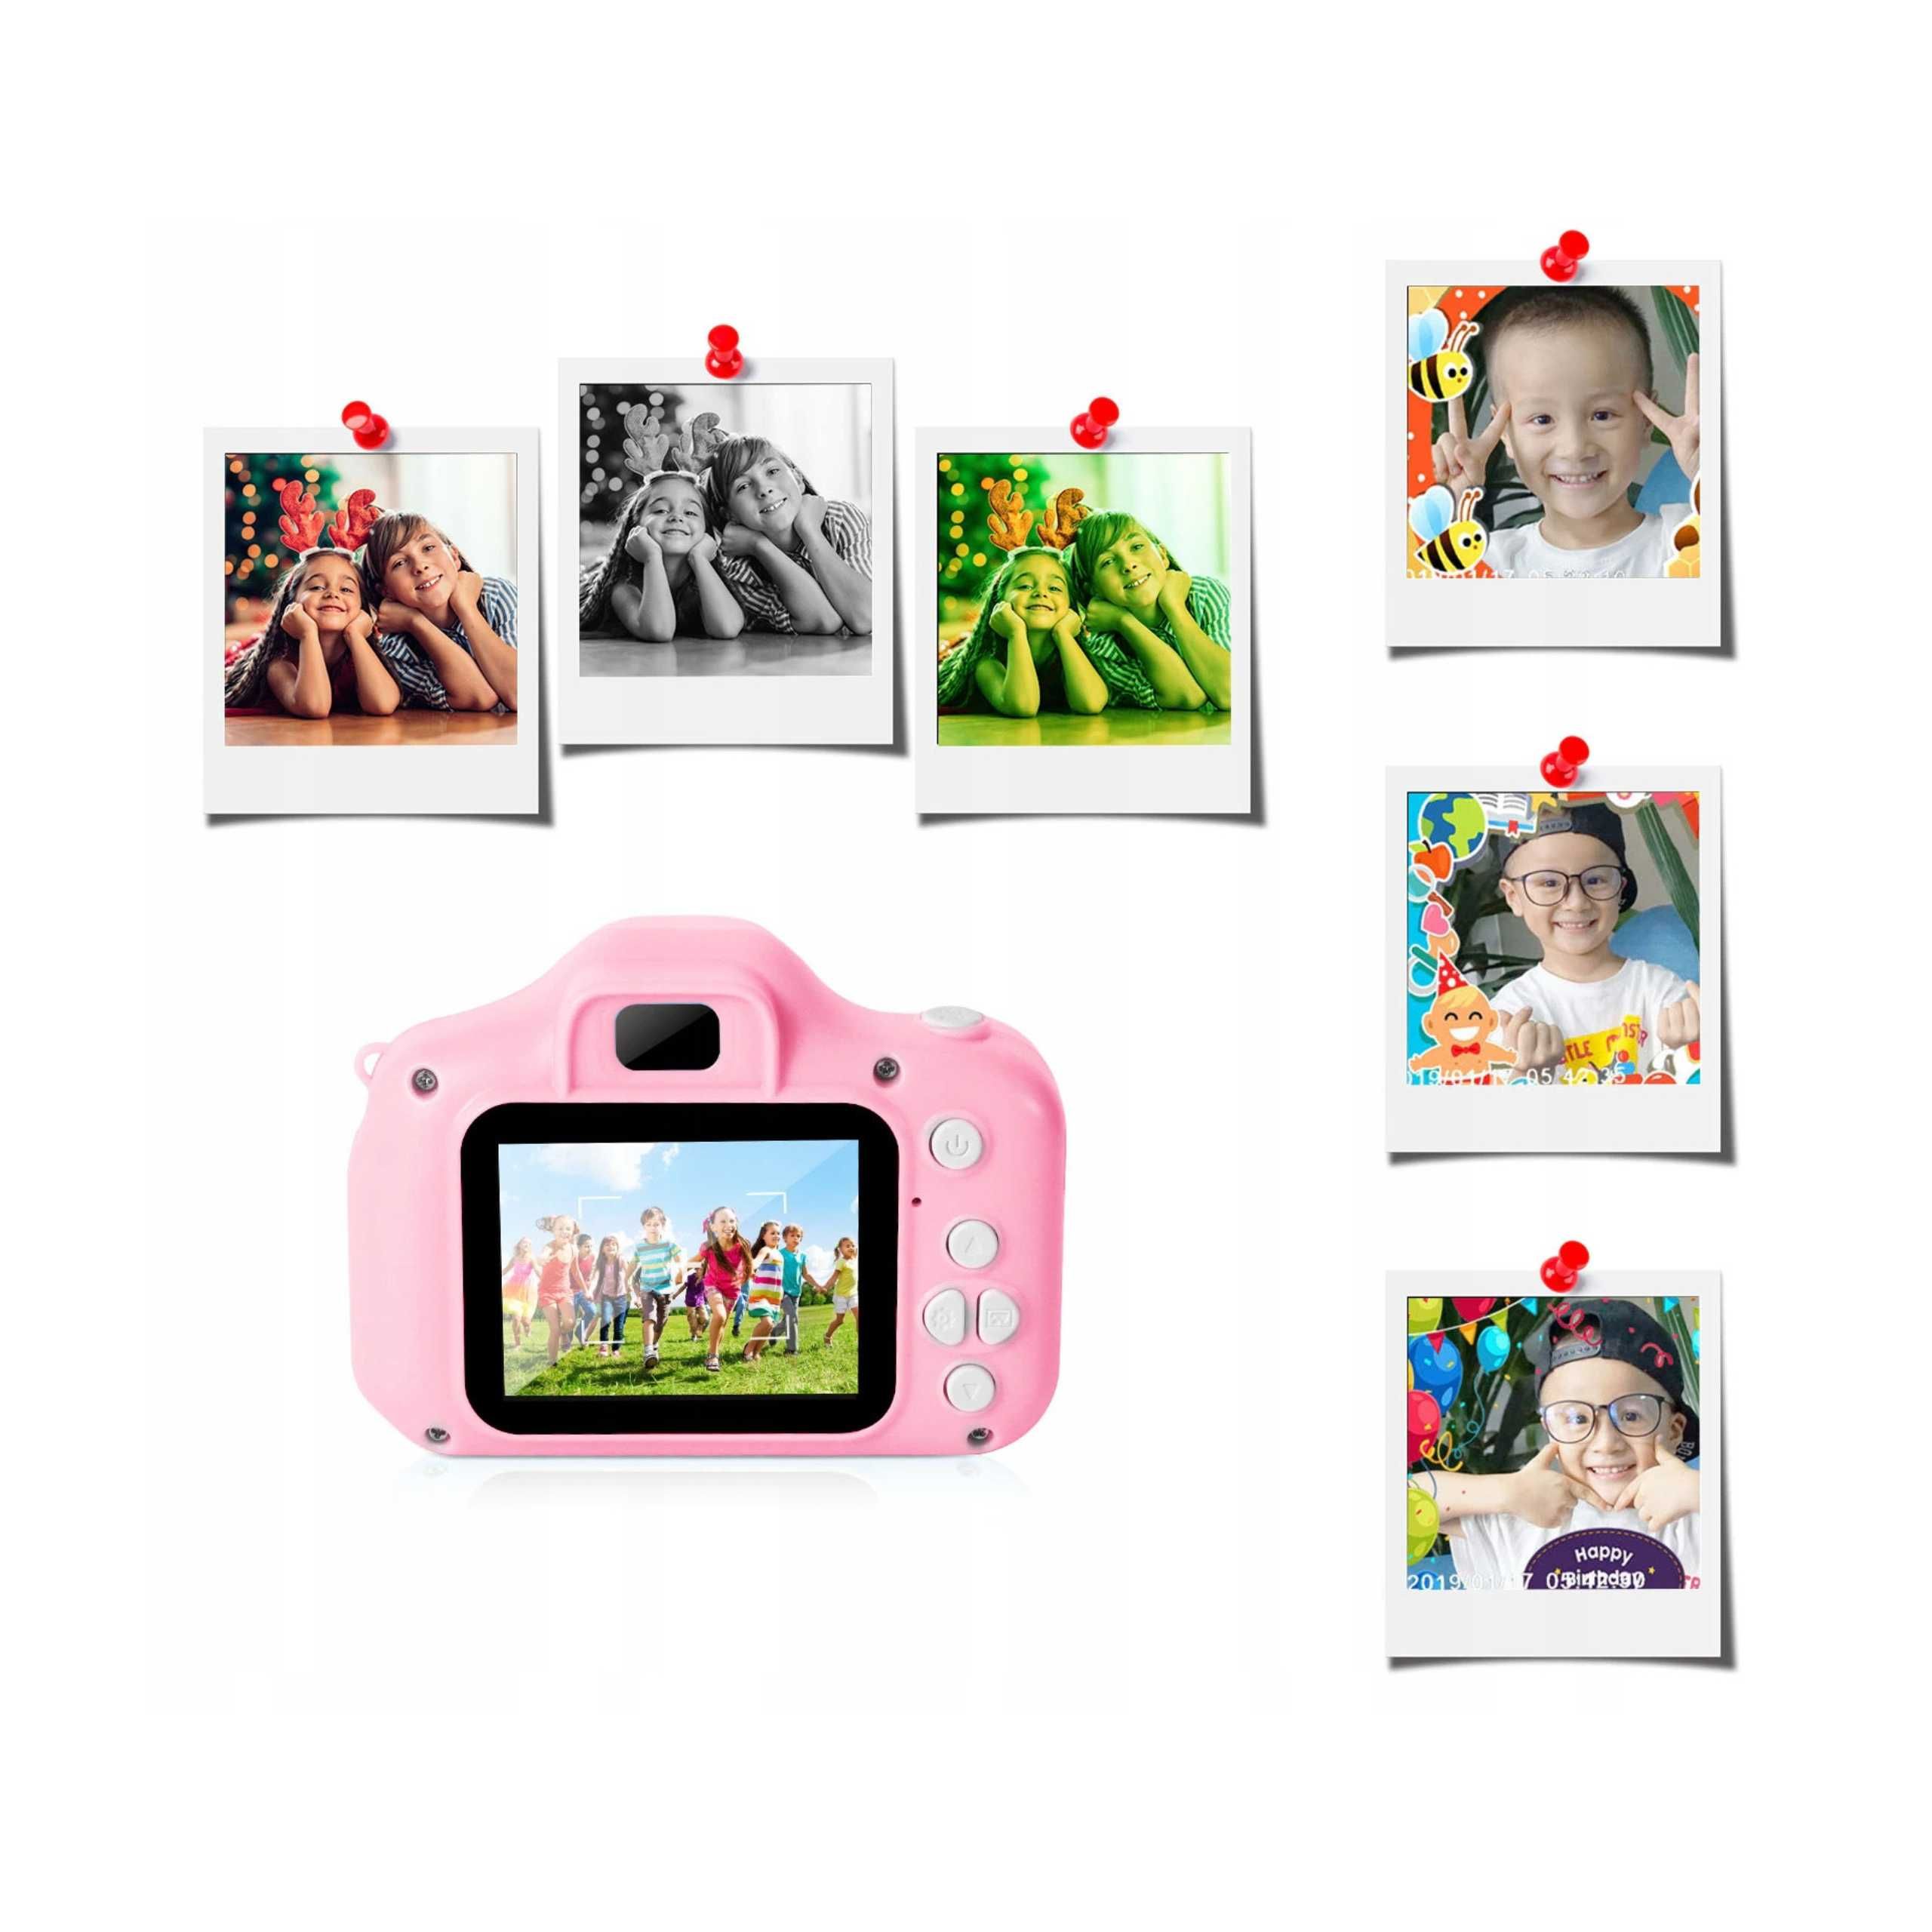 Aparat Cyfrowy Fotograficzny + Karta 32GB + gry Zabawka dla dzieci